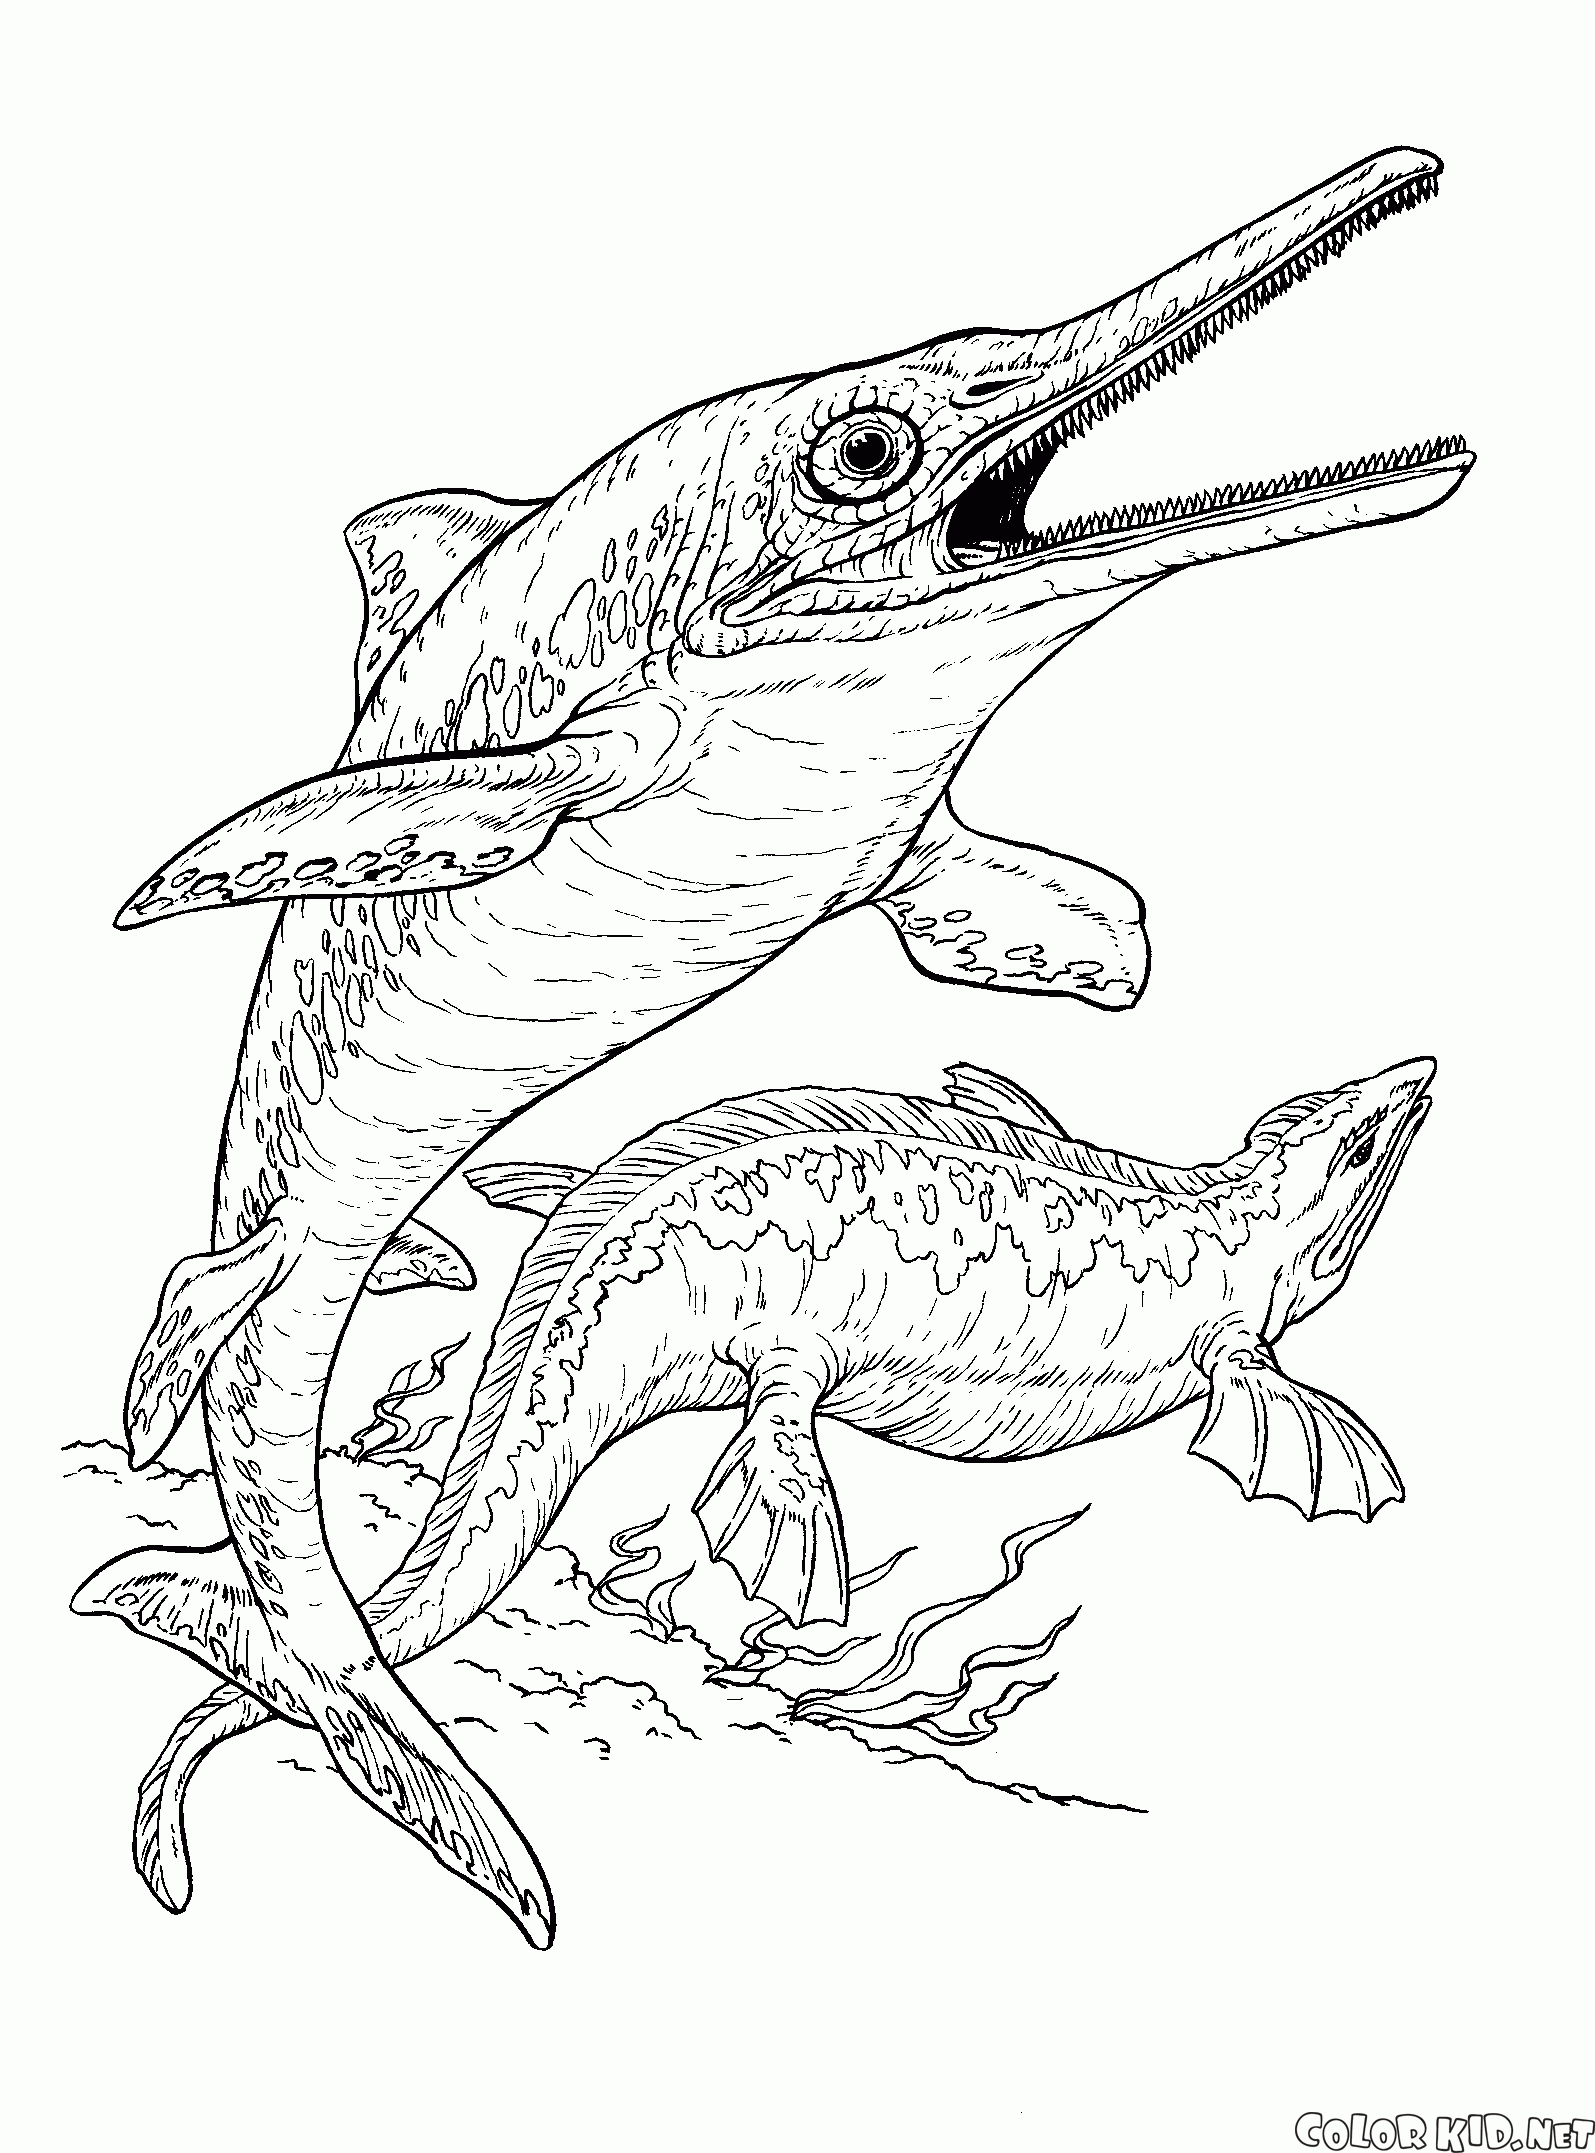 Ихтиозавр и плиозавр